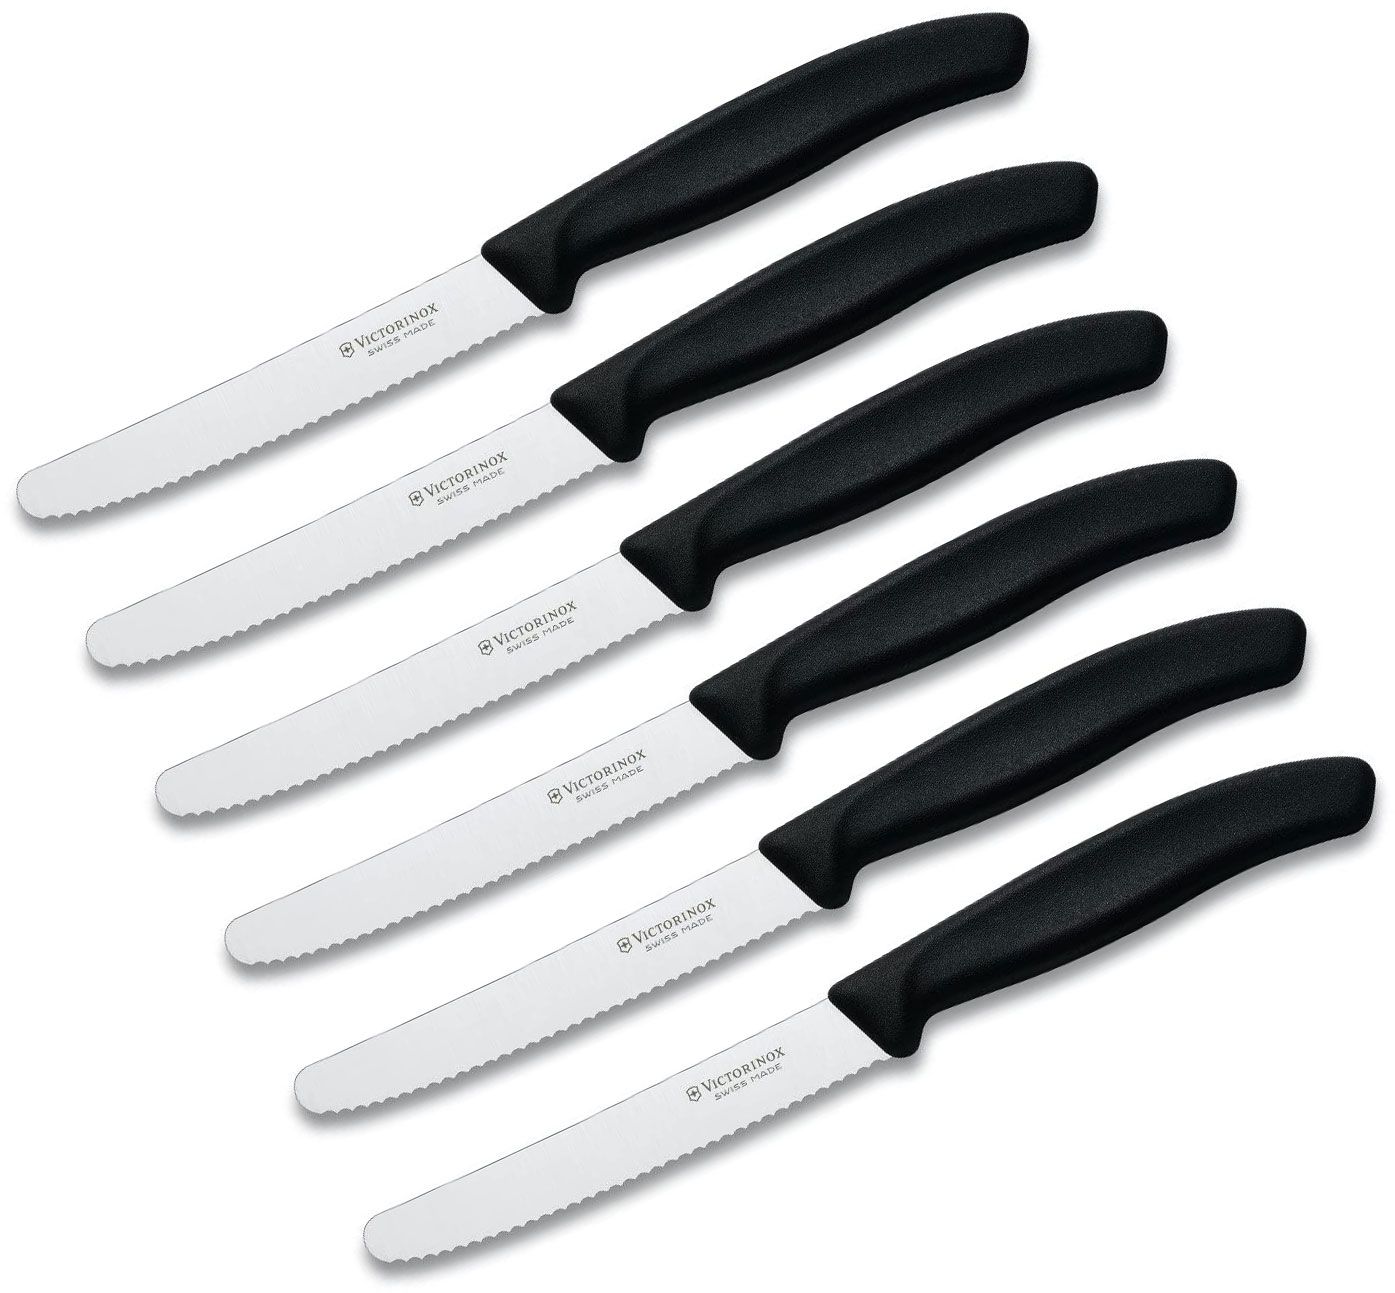 Victorinox Forschner 6-Piece 4.5 Serrated Steak Knife Set, Round Tip, Black  Polypropylene Handle - KnifeCenter - 6.7833-X8